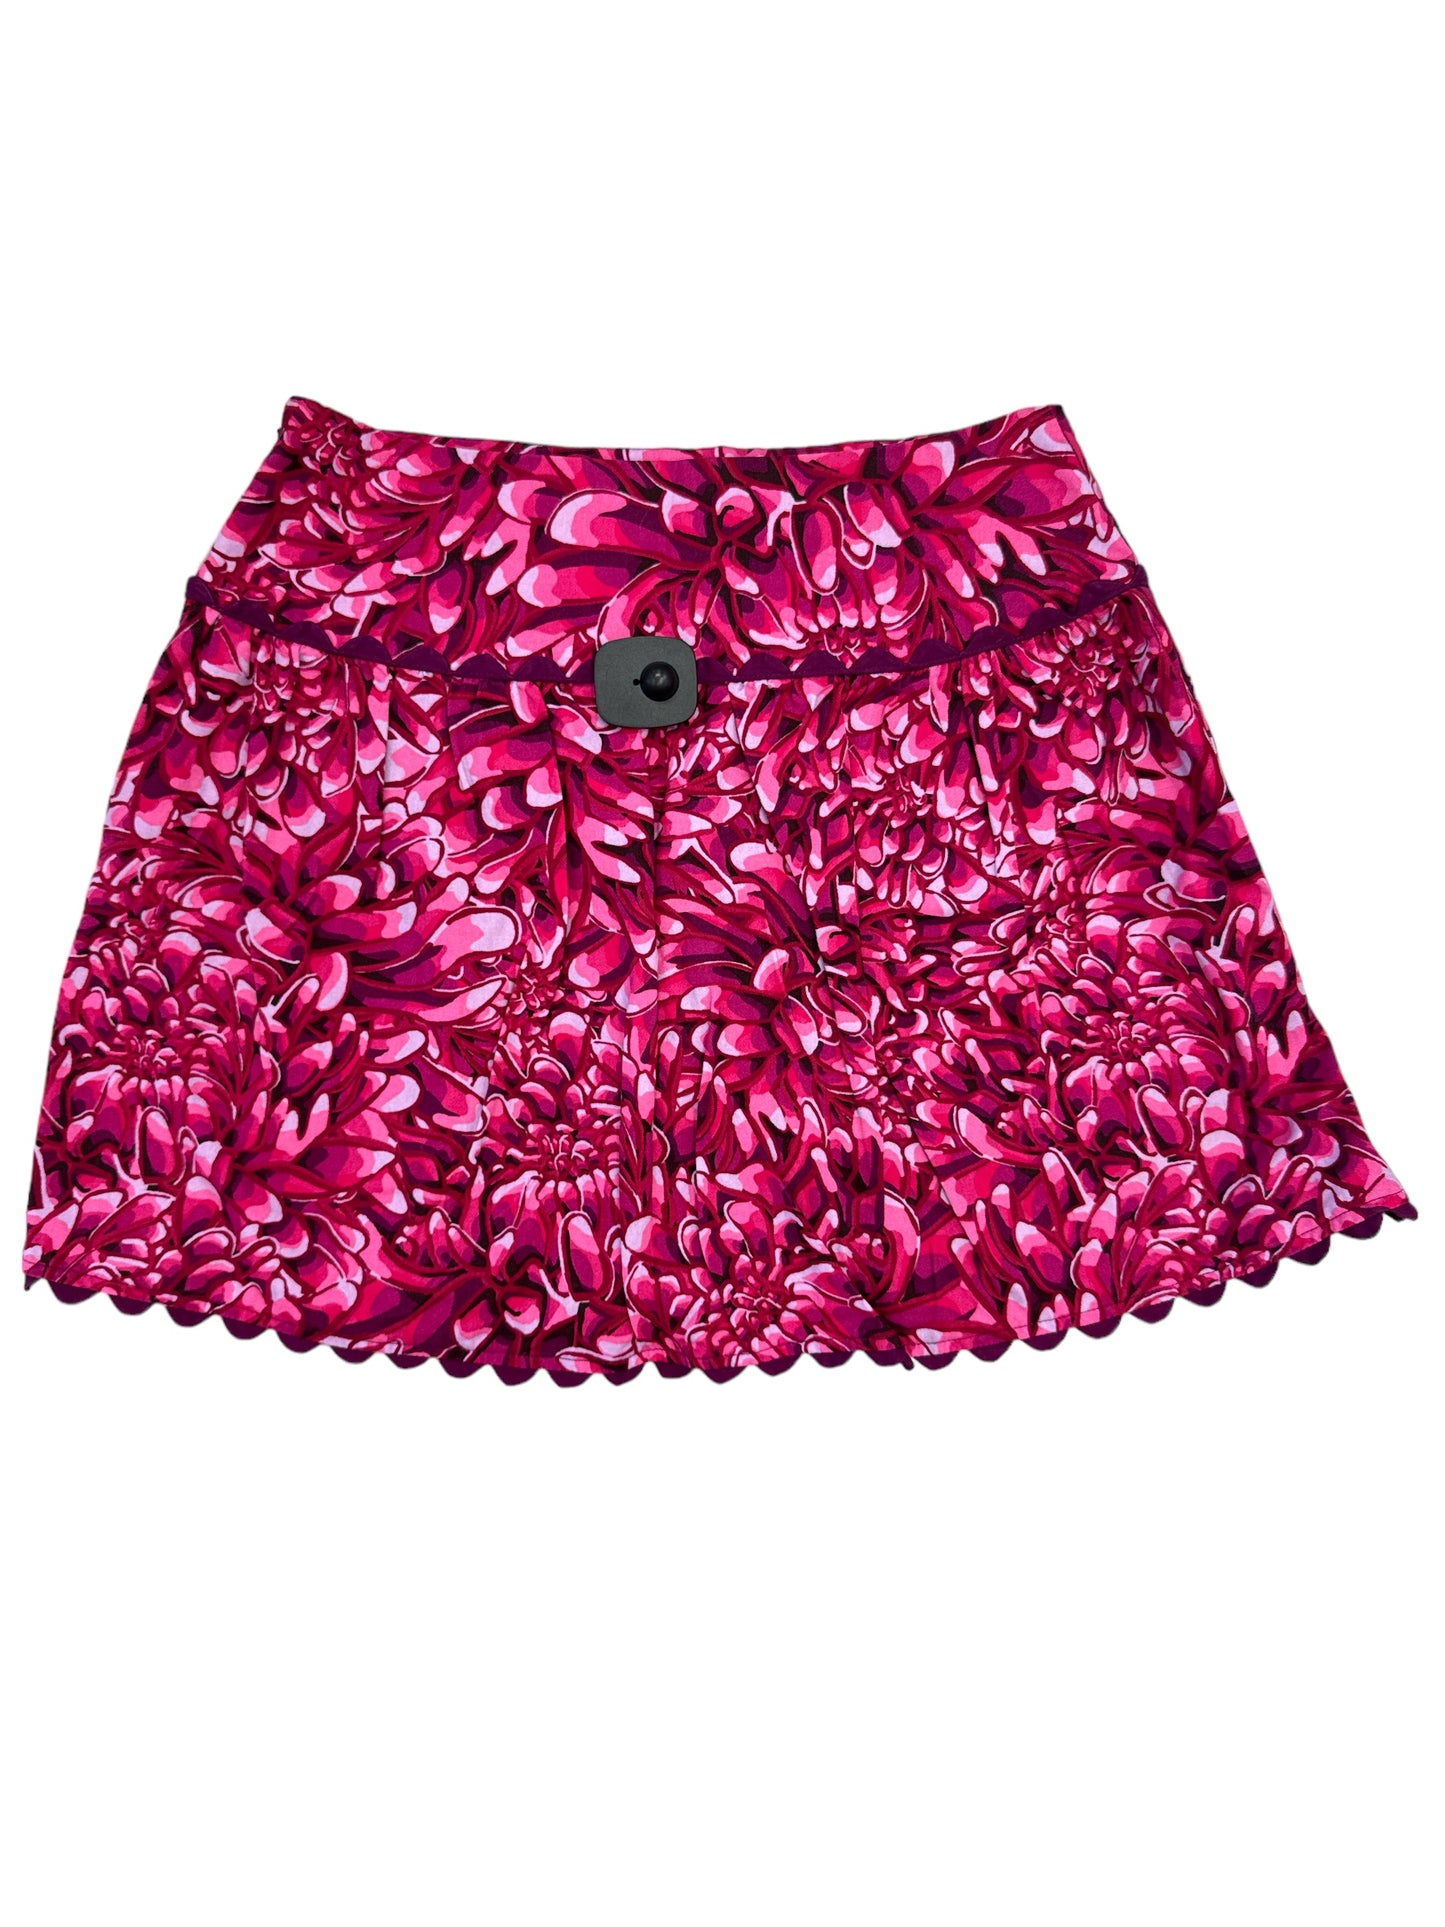 Skirt Mini & Short By Target-designer  Size: 6